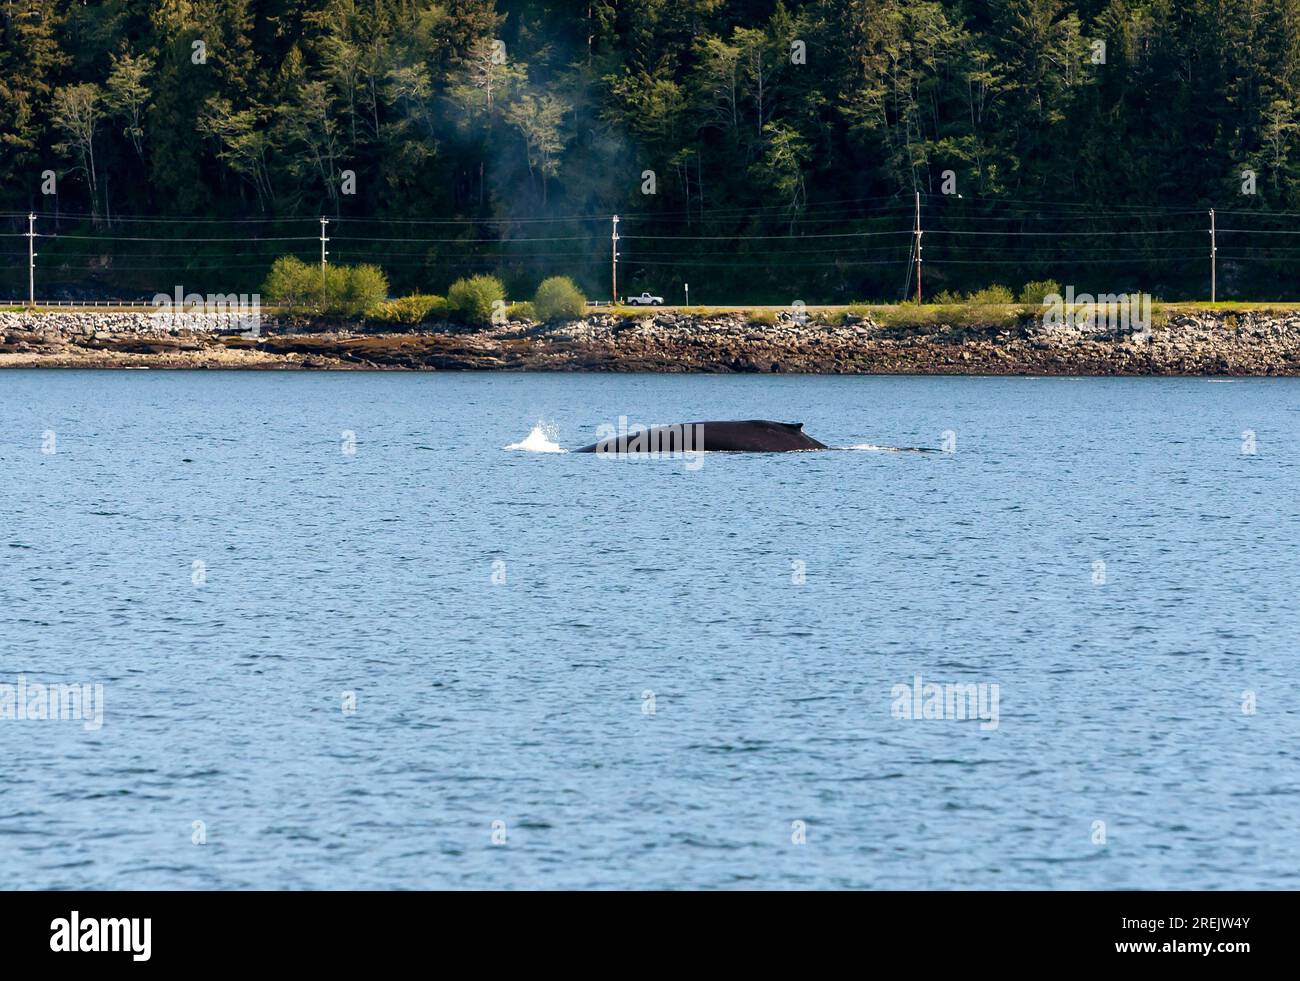 Nageoire dorsale d'une baleine à bosse (Megaptera novaeangliae) faisant surface dans l'eau près d'une route à Ketchikan, Alaska Banque D'Images